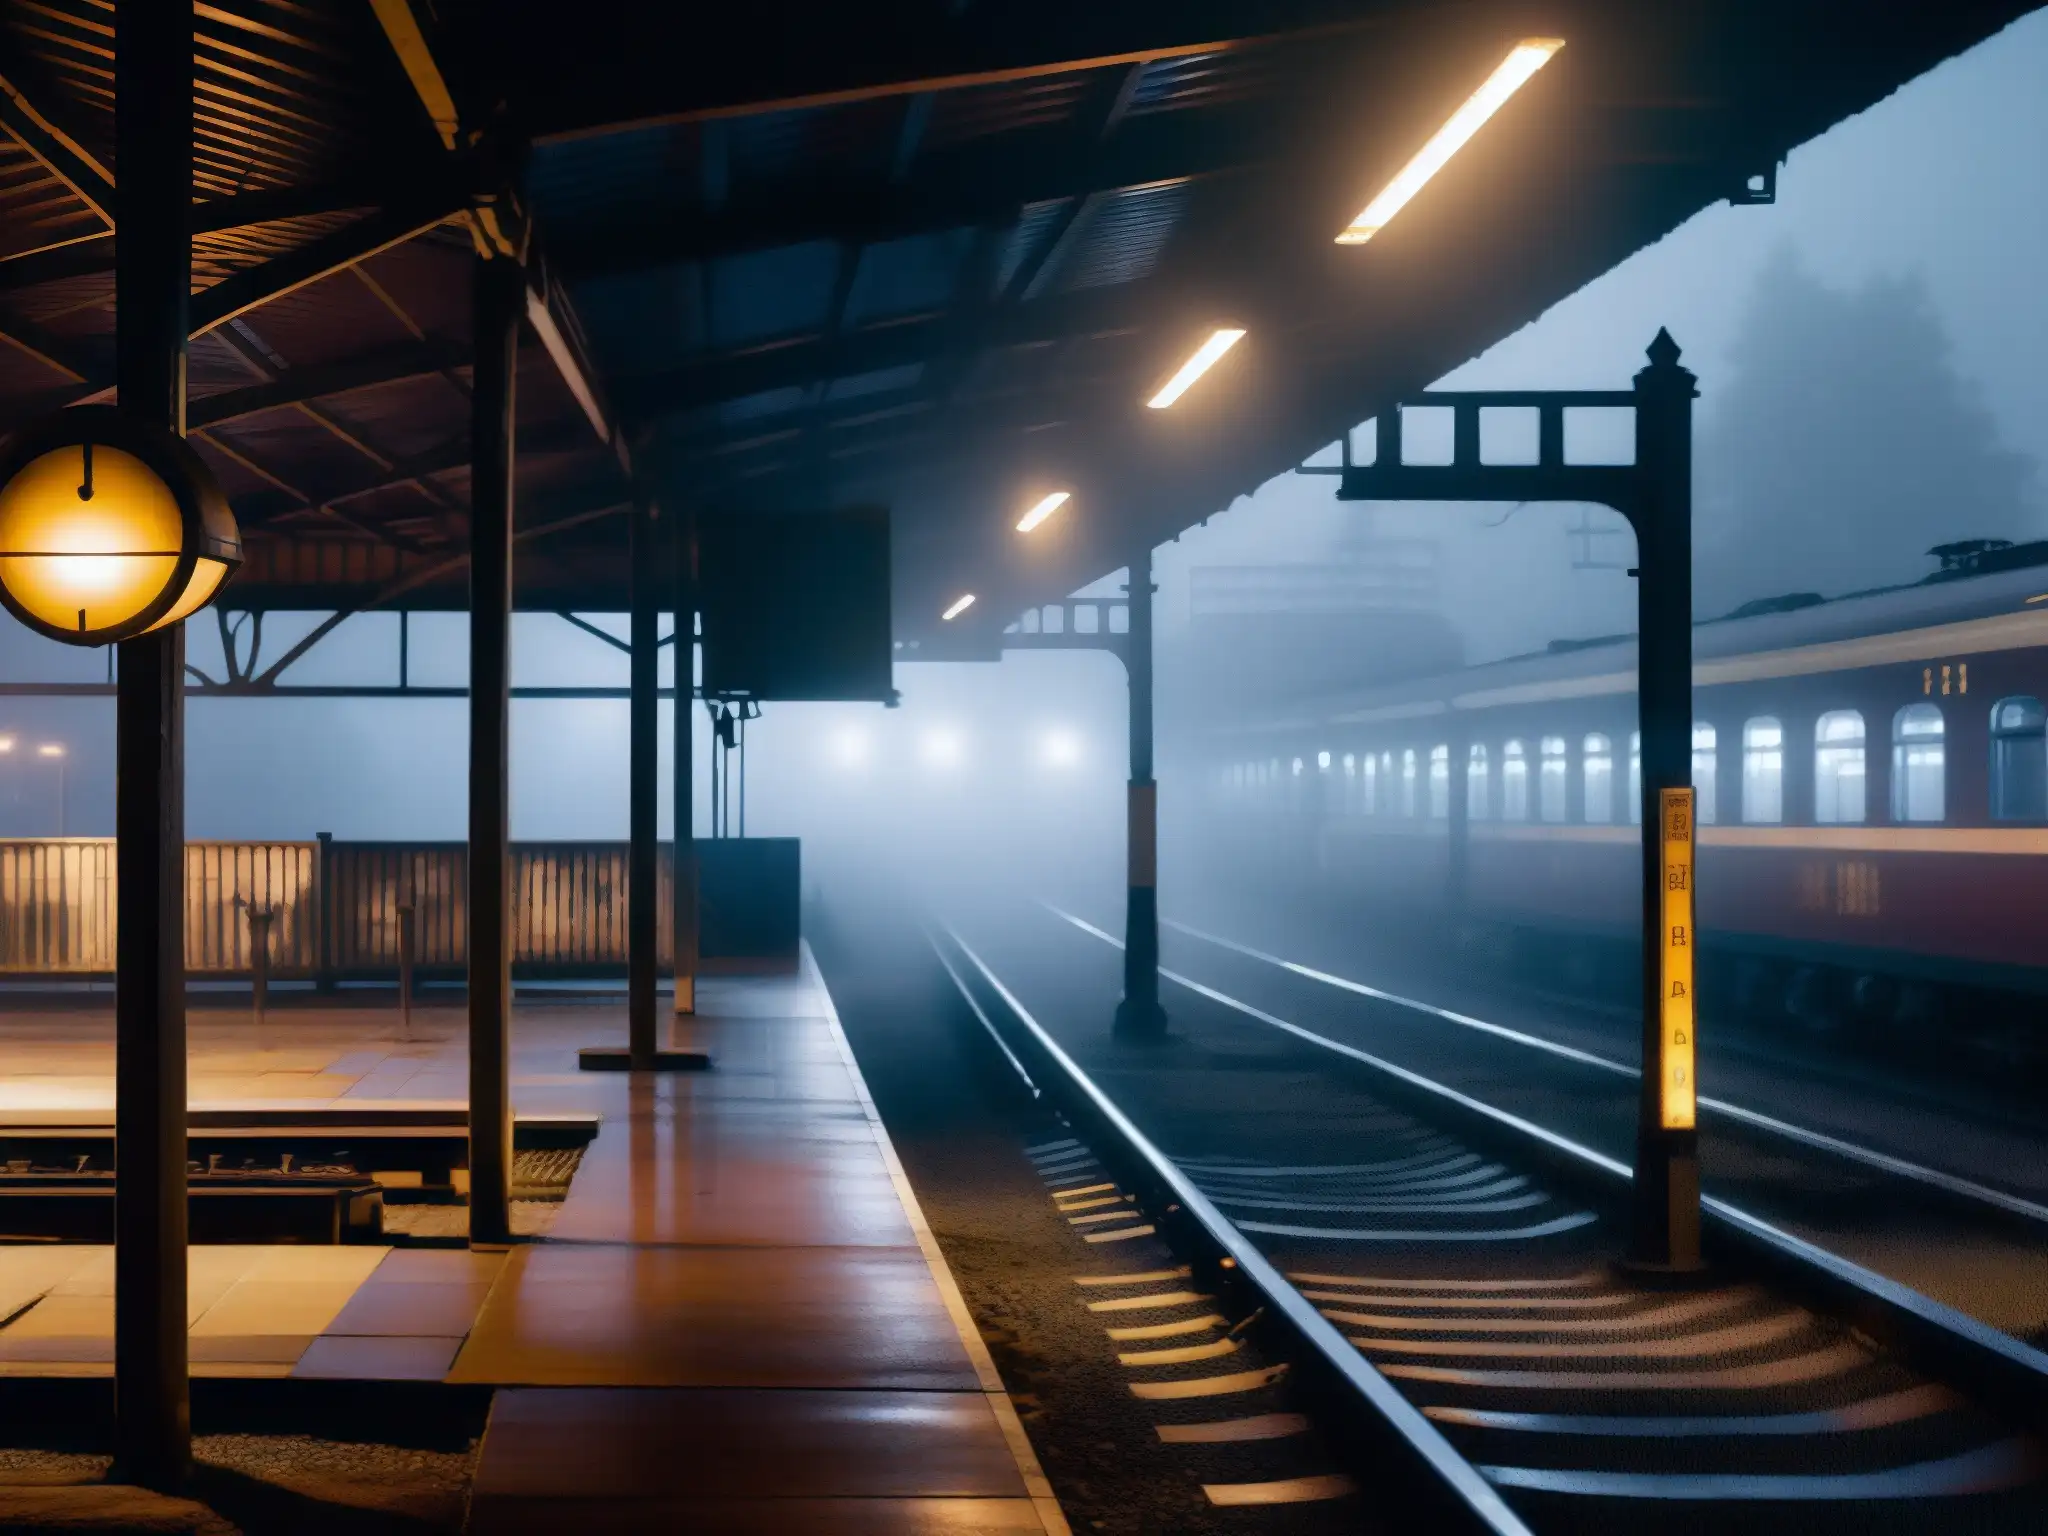 Una estación de tren desierta en la noche con luces tenues y neblina espesa